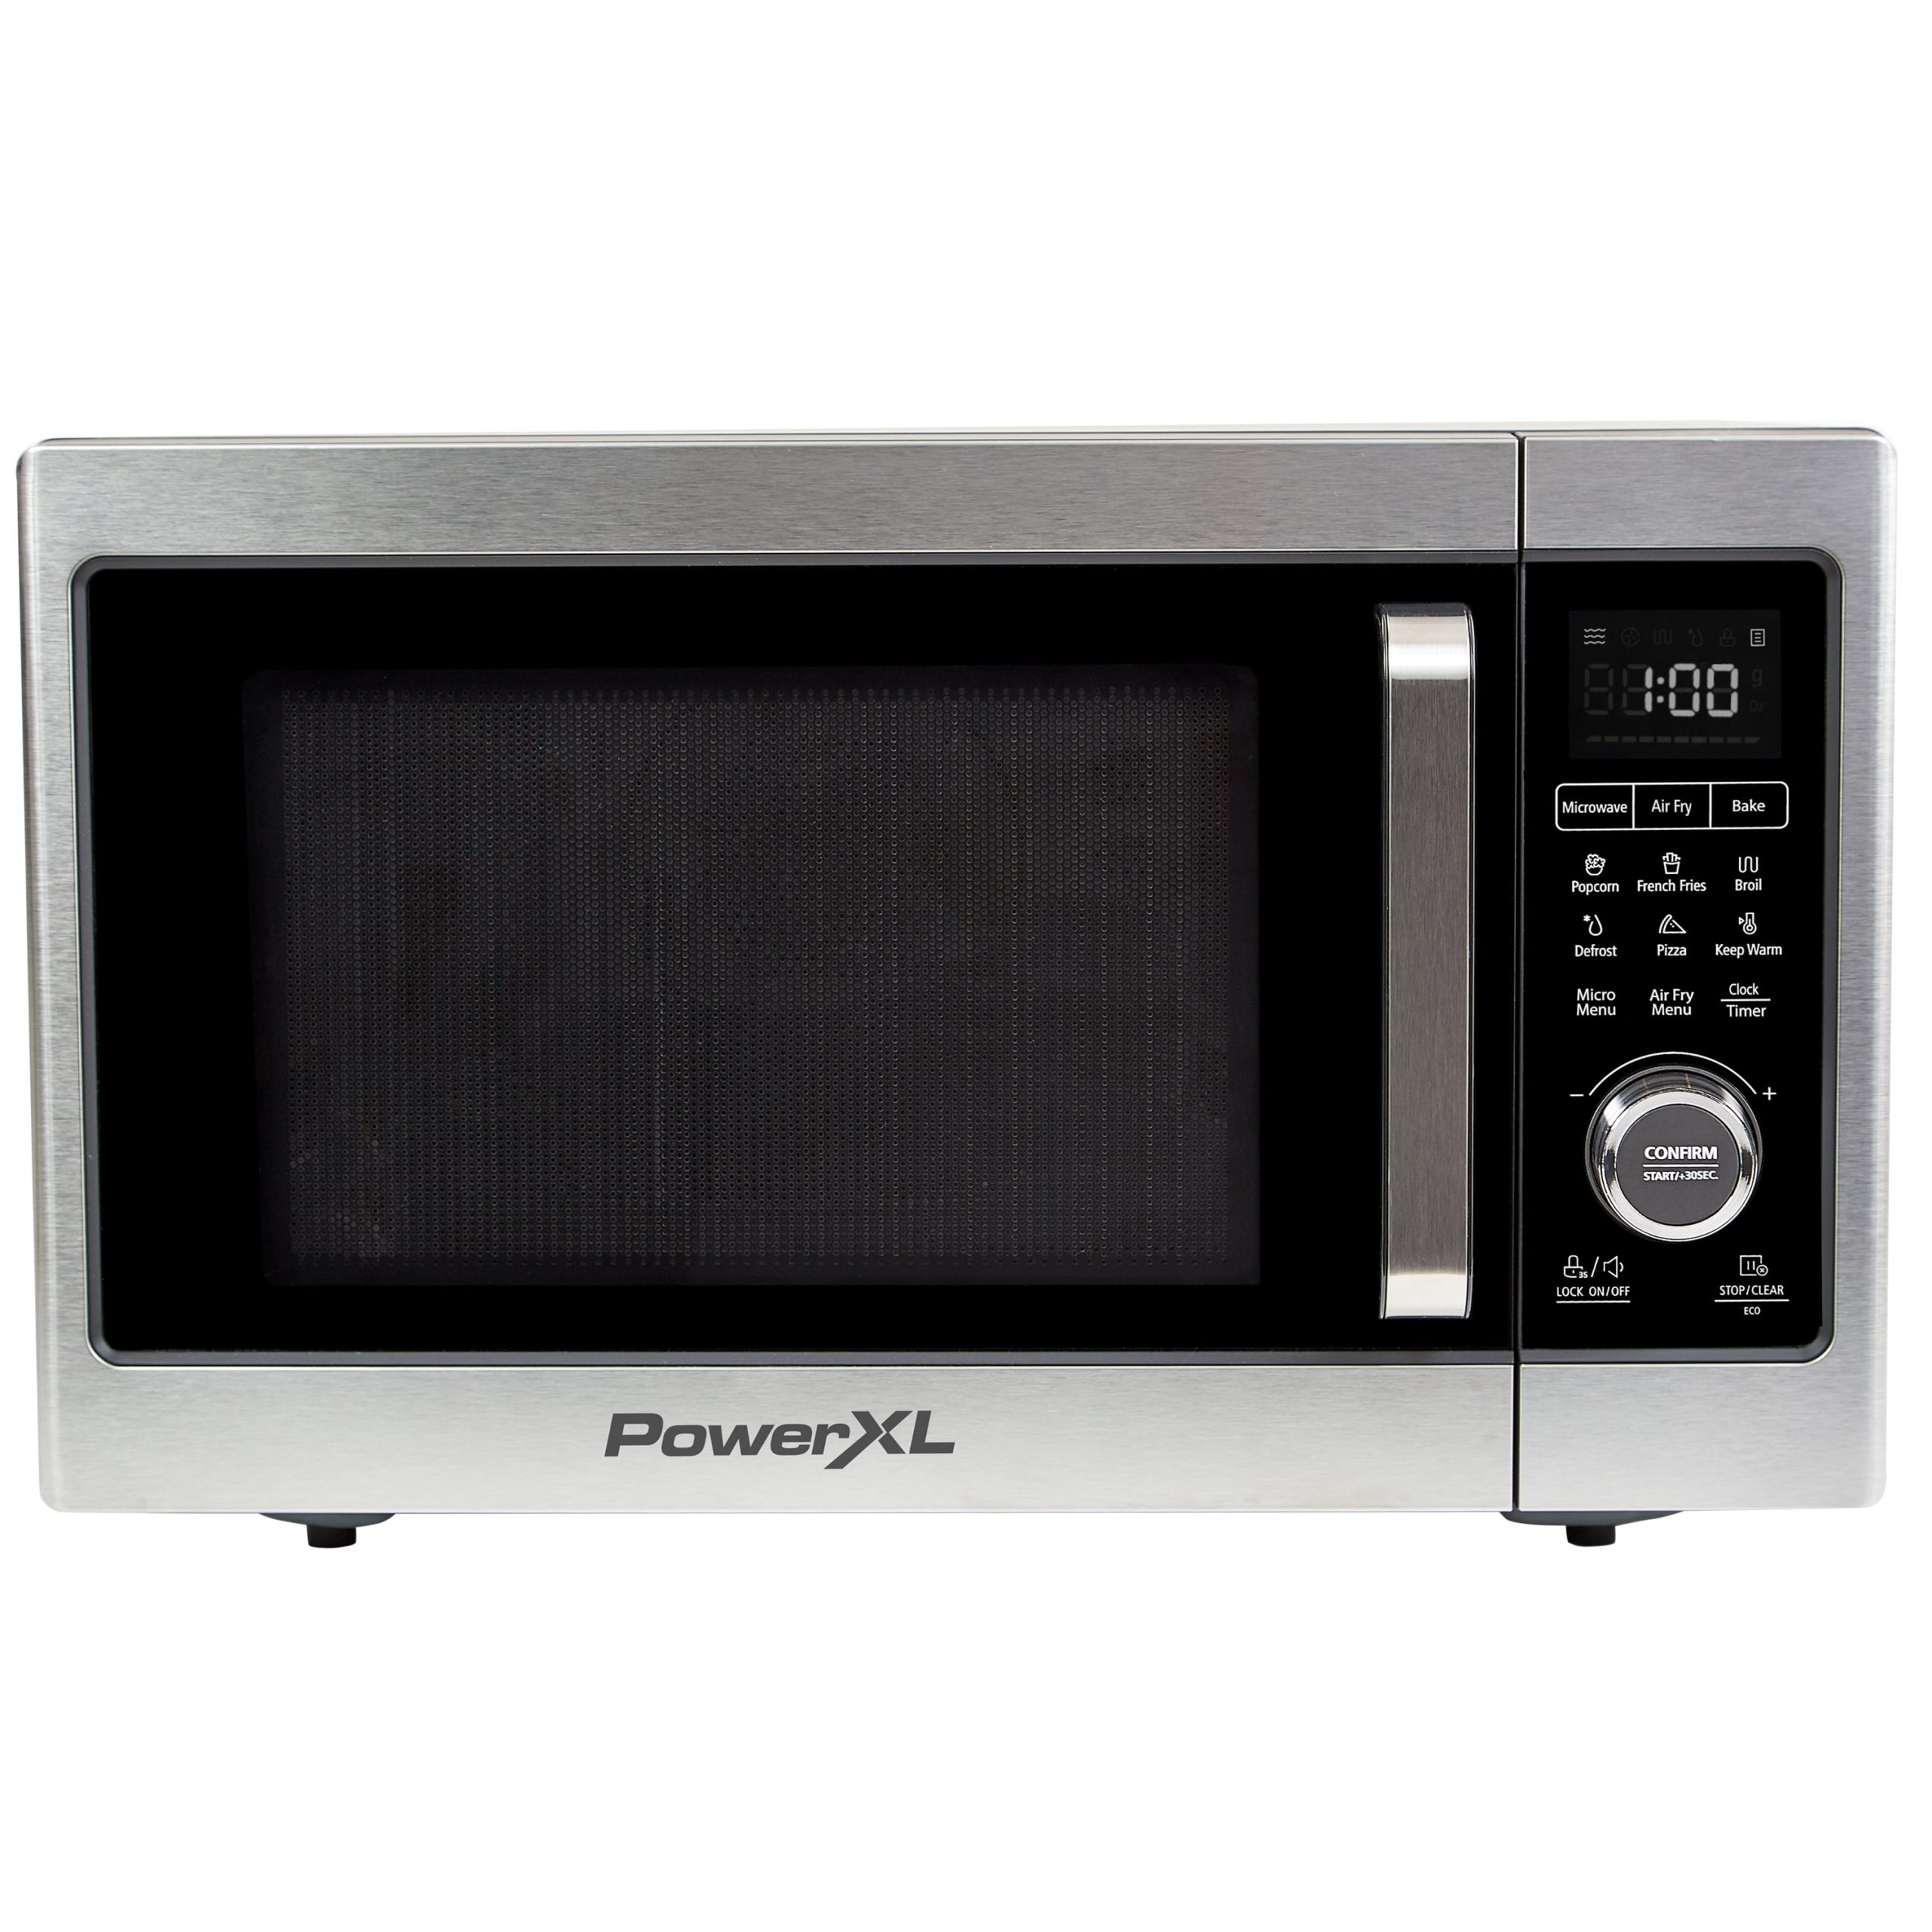 PowerXL Microwave Air Fryer Plus, Stainless Steel / Black, 1cu. ft ...